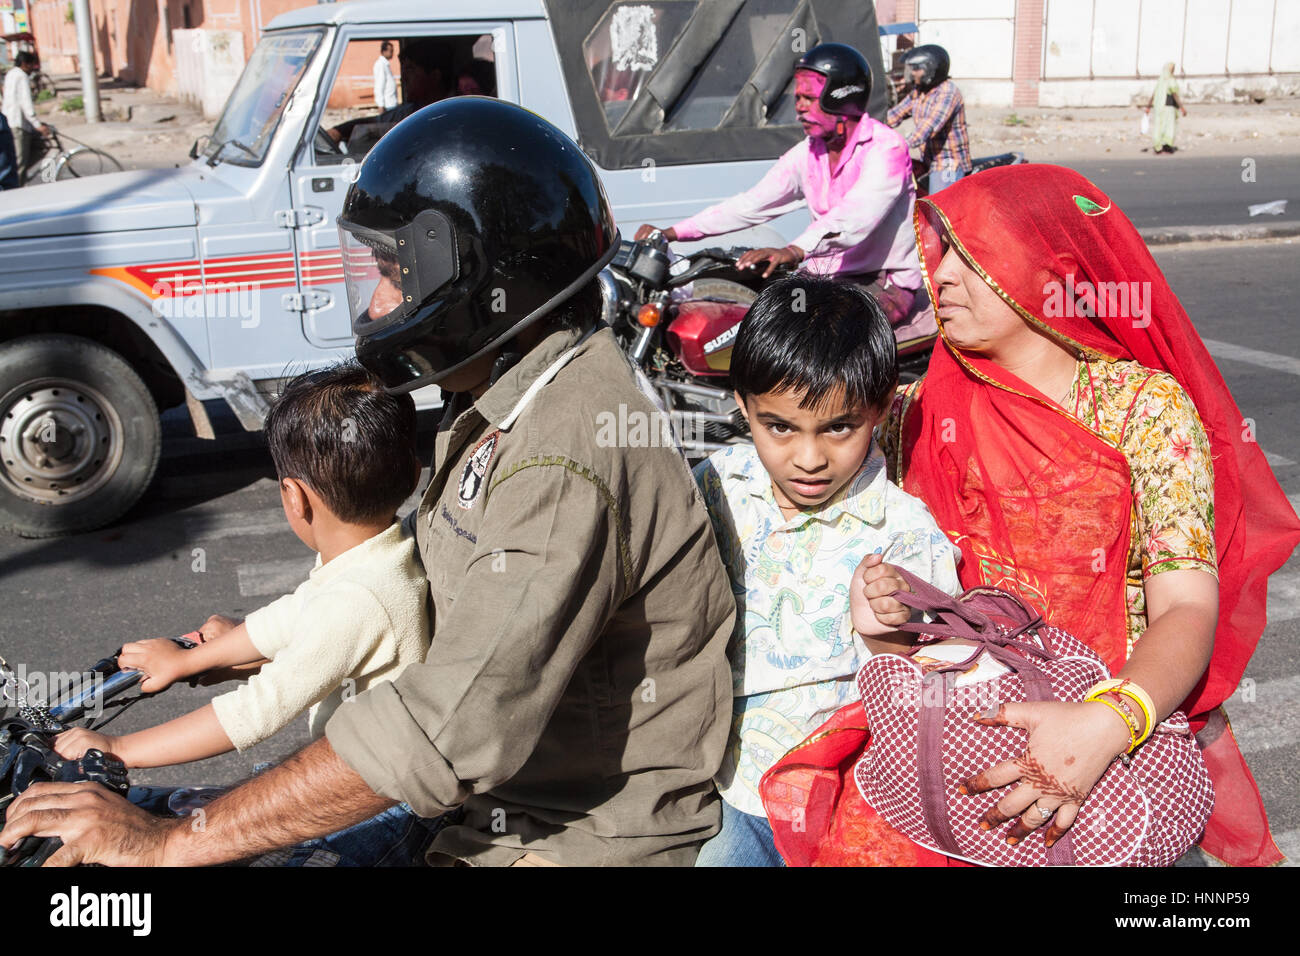 Vier Mitglieder der Familie auf dem Motorrad während der Frühlings-Event, Urlaub. Holi-Fest der Farbe. Jaipur,Rajasthan,India,Asia.Rider mit Helm. Kein Helm Stockfoto